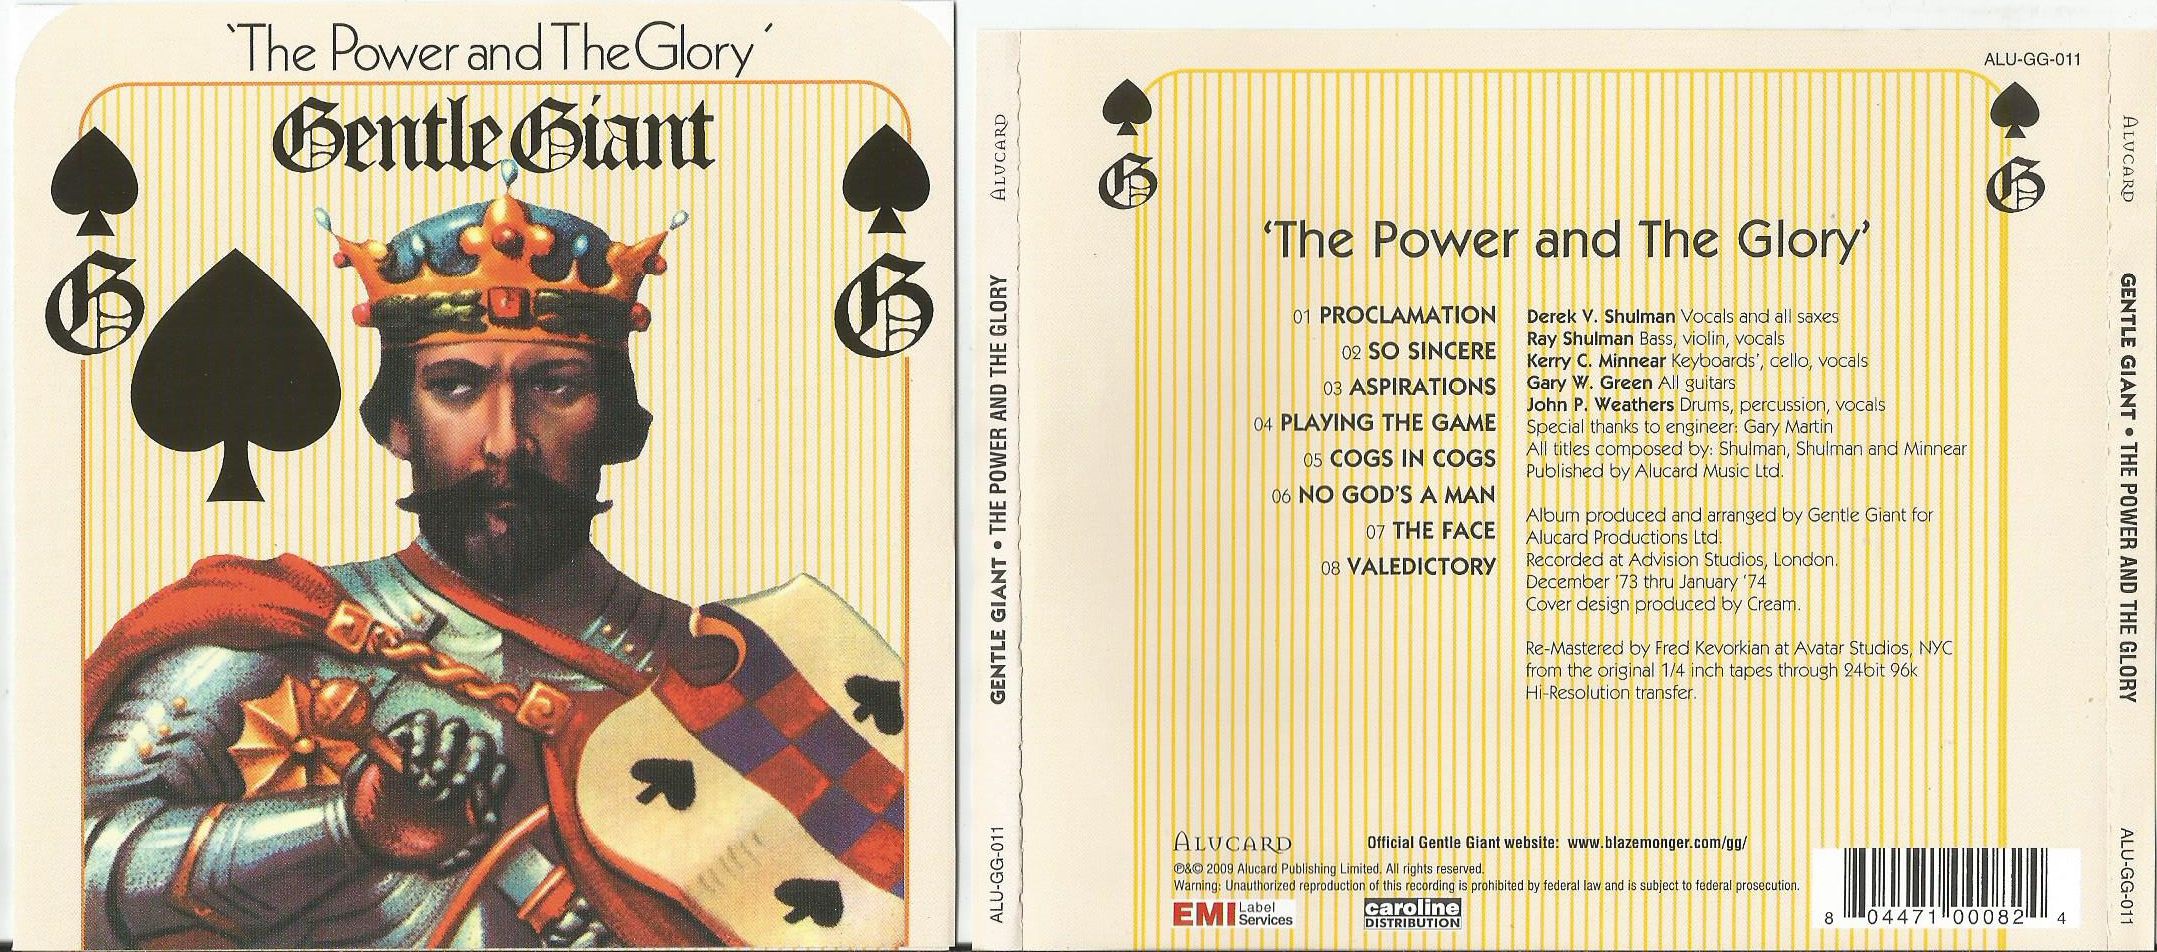 Глори перевод. Gentle giant Power and the Glory. Gentle giant the Power and the Glory 1974. Gentle giant the Power and the Glory Cover. Gentle giant gentle giant 1974 Cover.